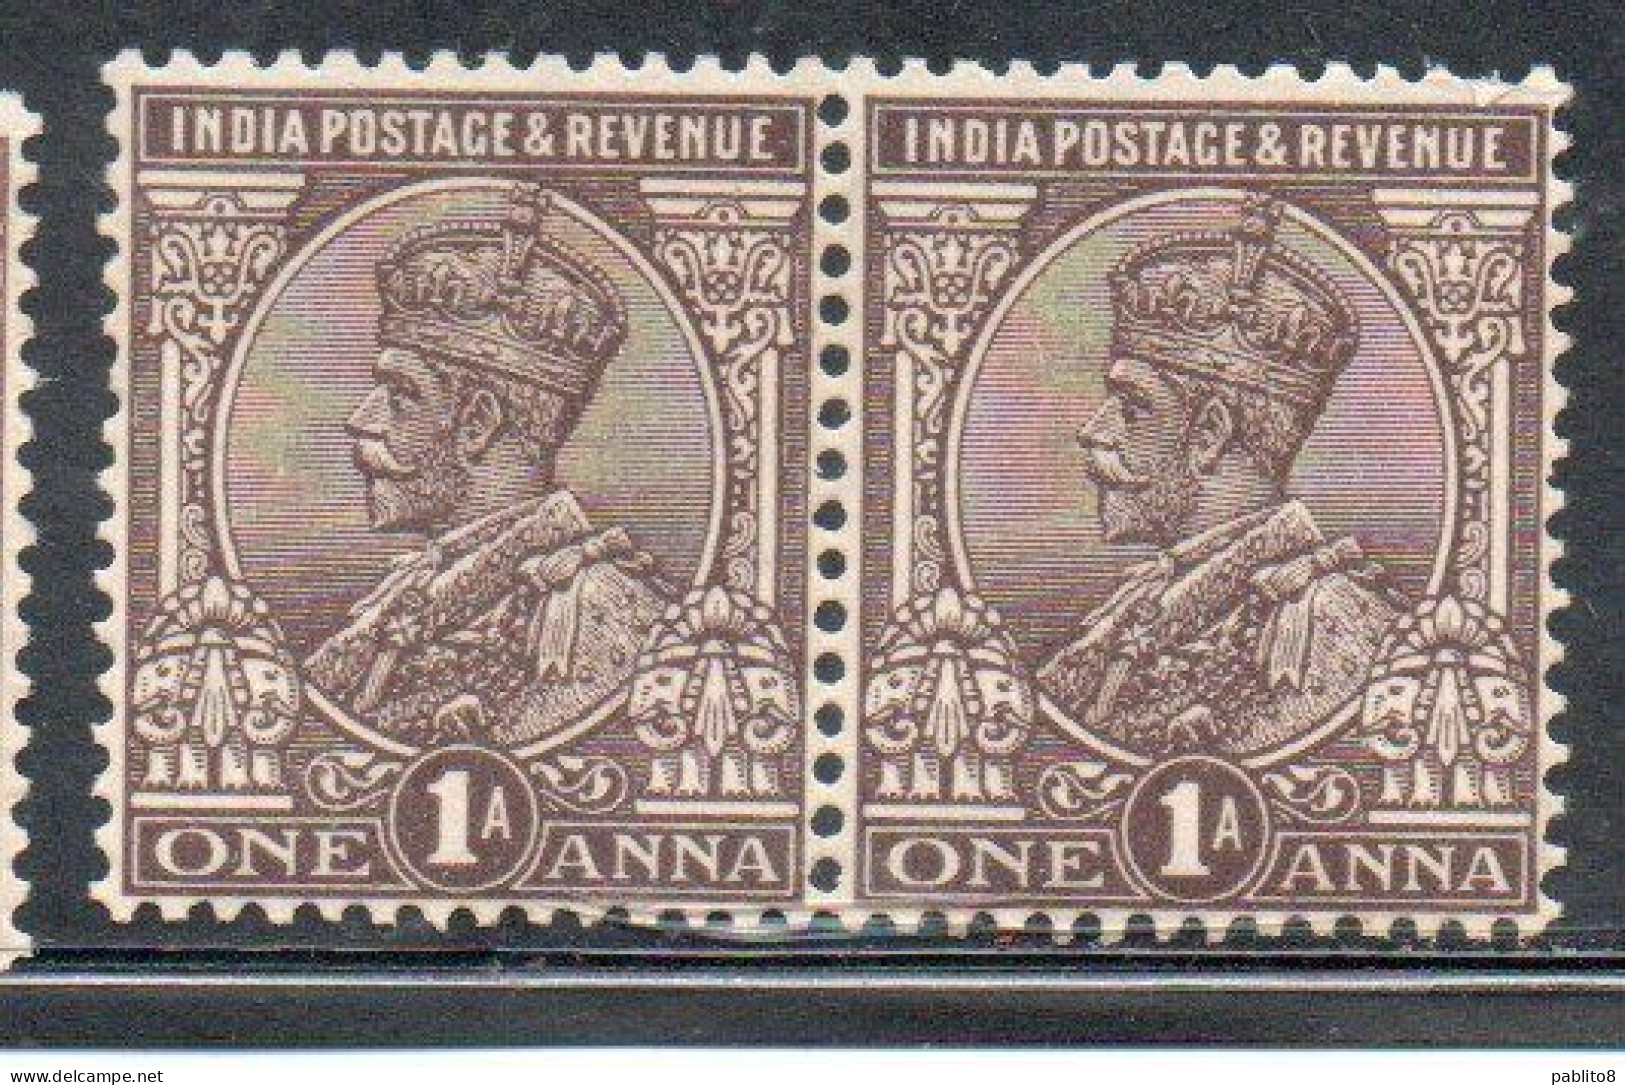 INDIA INDE 1911 1923 KING GEORGE V 1a MNH - 1902-11 Roi Edouard VII